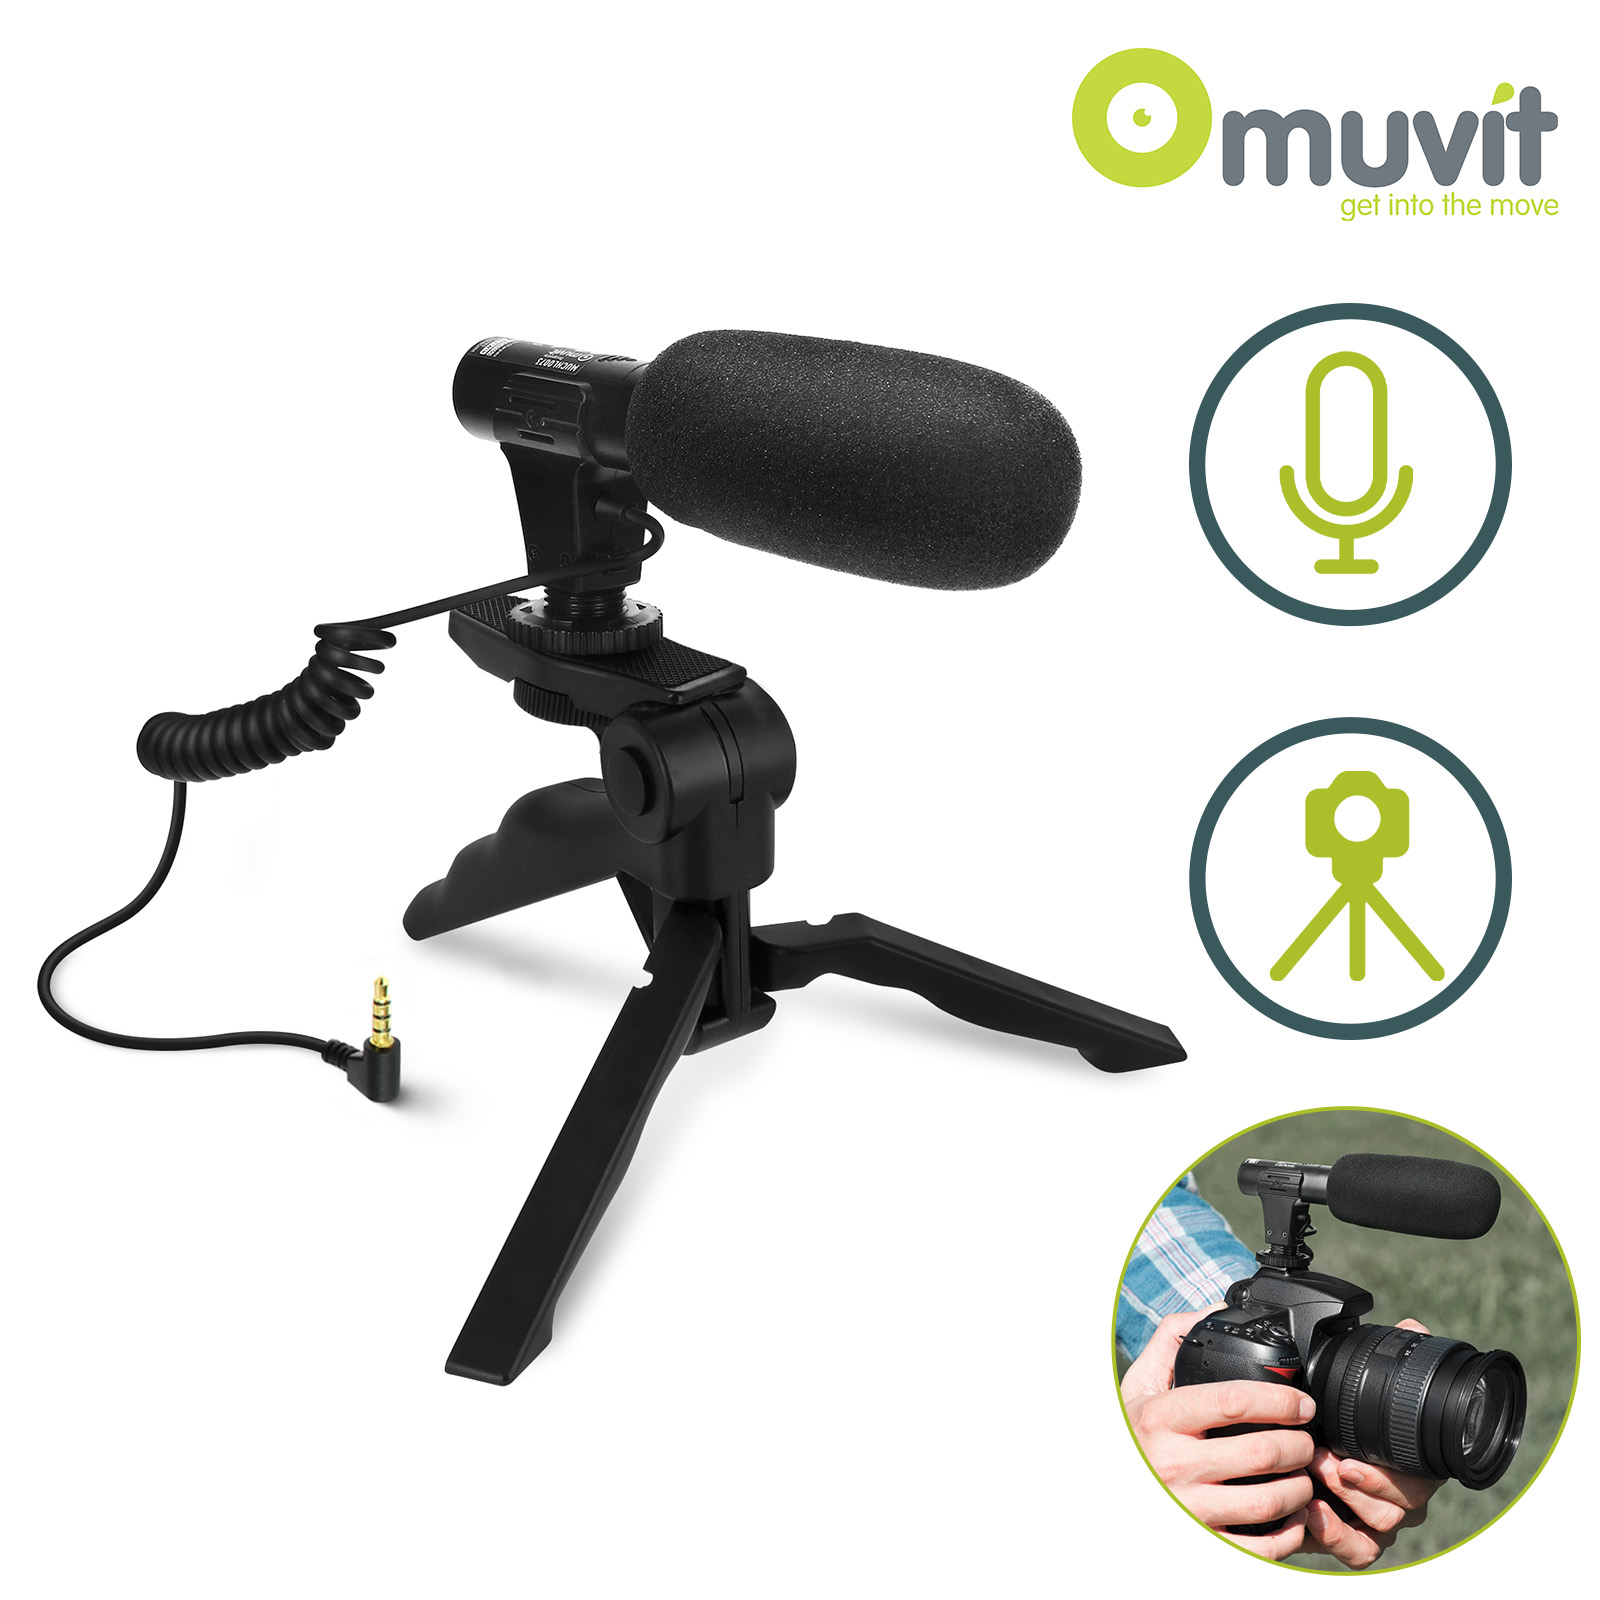 Microfono omnidirezionale professionale per smartphone / fotocamera, jack  3,5 mm, treppiedi per Vlog, e video - Italiano